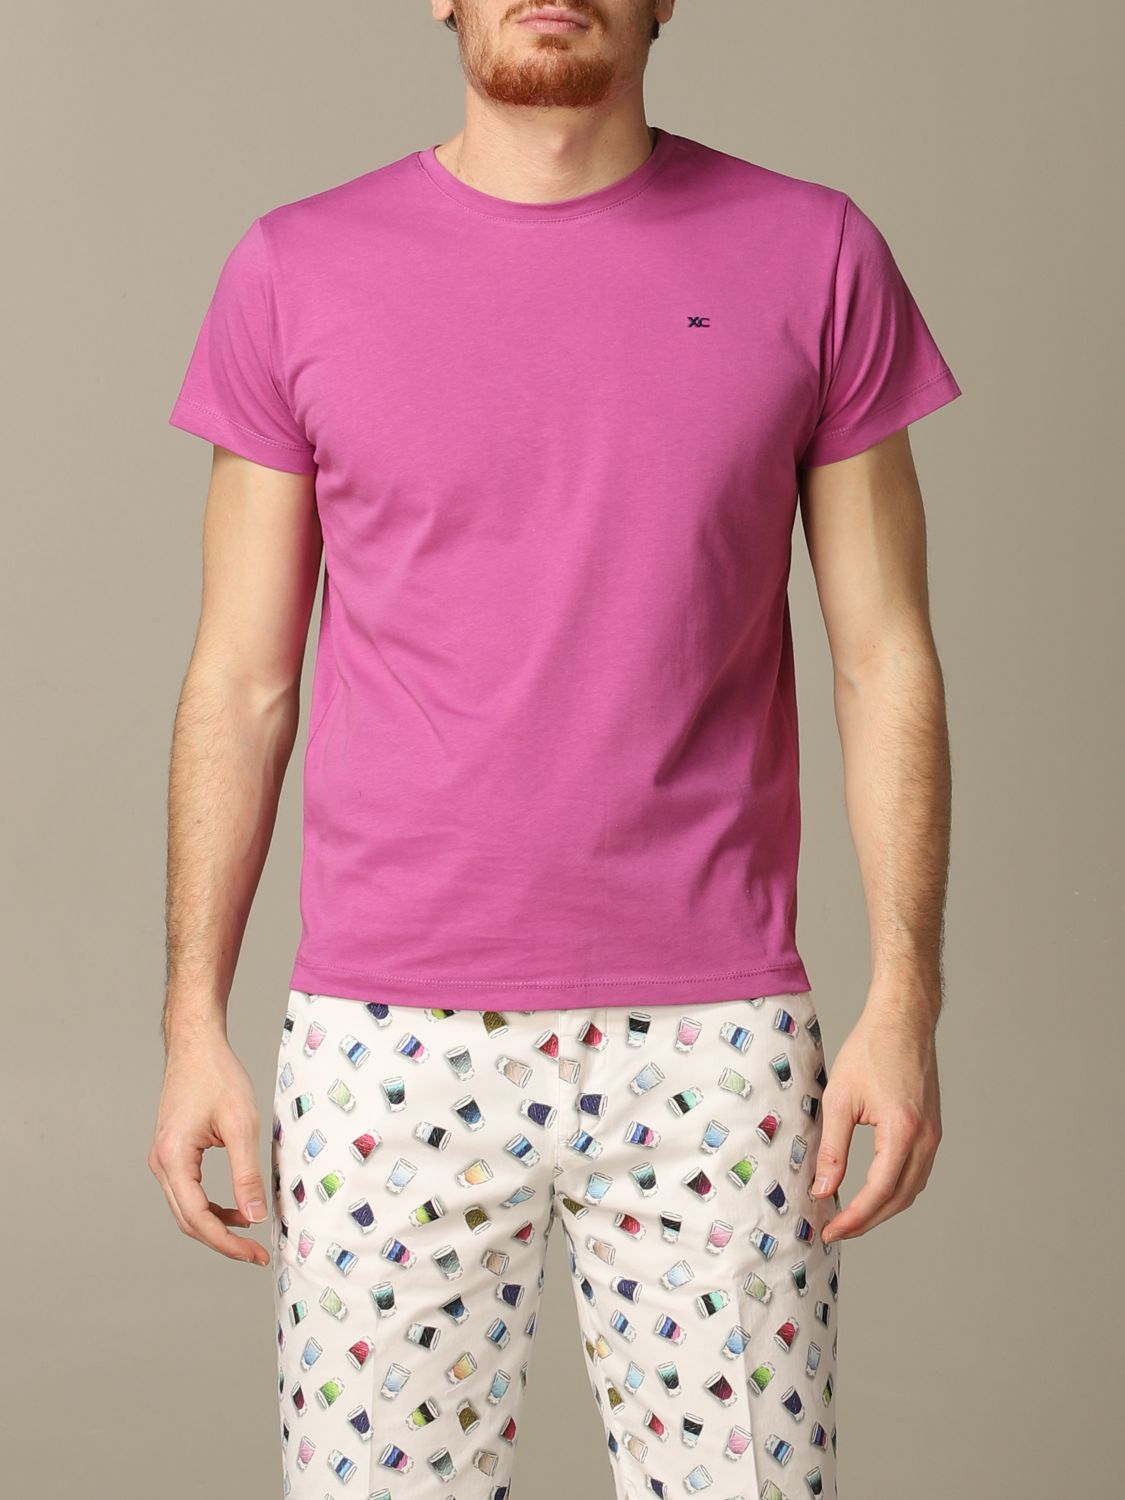 Xc T-Shirt XC Men colour Violet